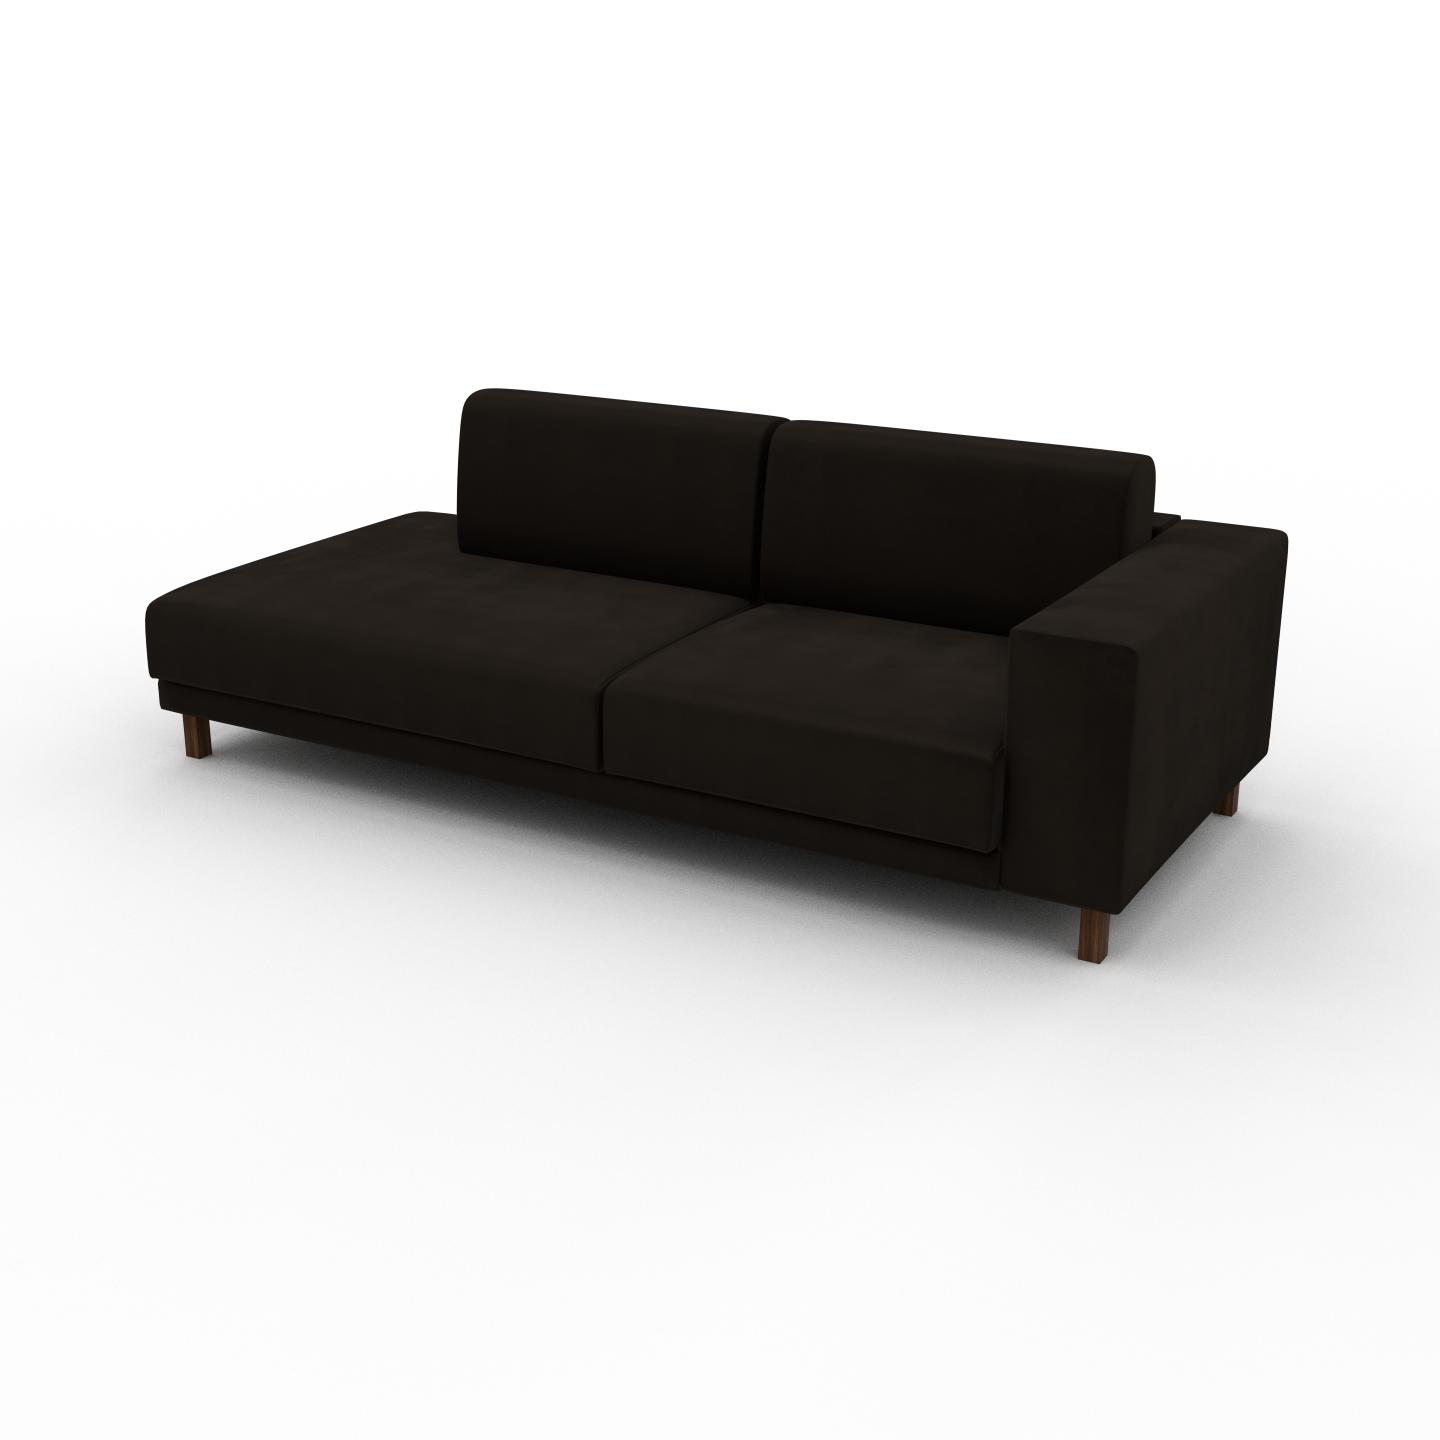 MYCS Sofa Samt Kaffeebraun - Moderne Designer-Couch: Hochwertige Qualität, einzigartiges Design - 224 x 75 x 98 cm, Komplett anpassbar